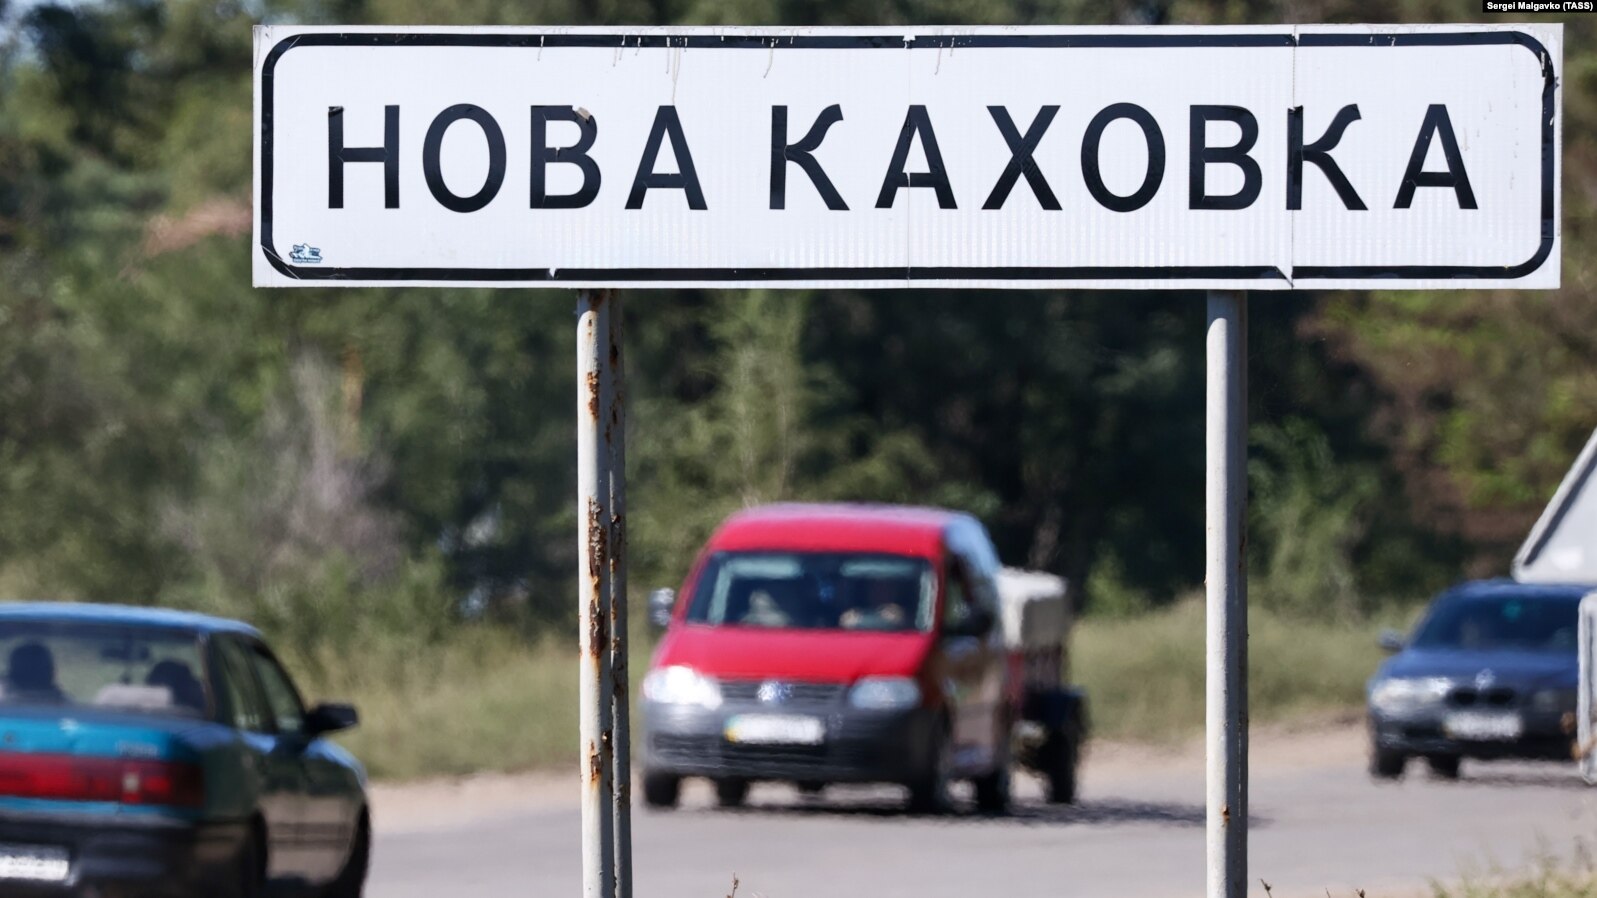 Українські товари, махінації з алкоголем, віджаті бомбосховища – що відбувається в Новій Каховці